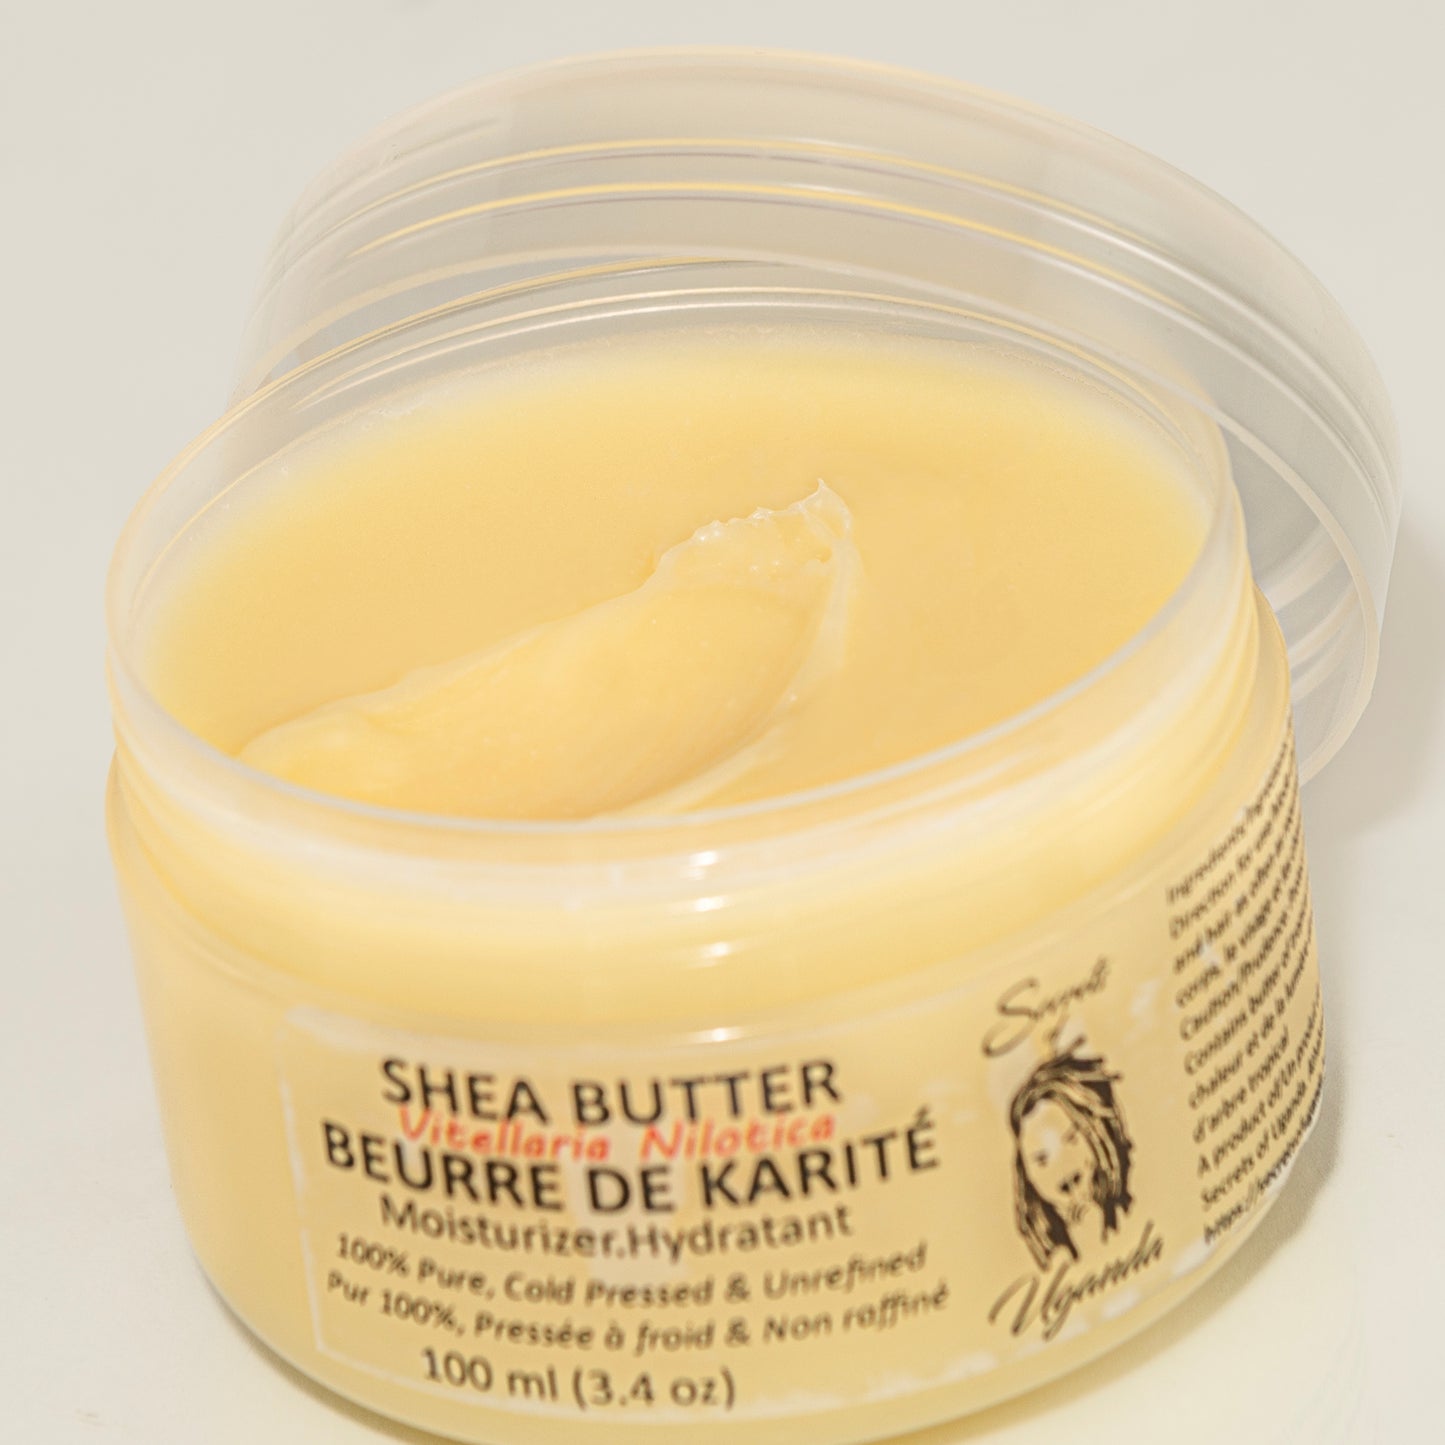 Pure Nilotica Shea Butter, 3.4oz or 100ml